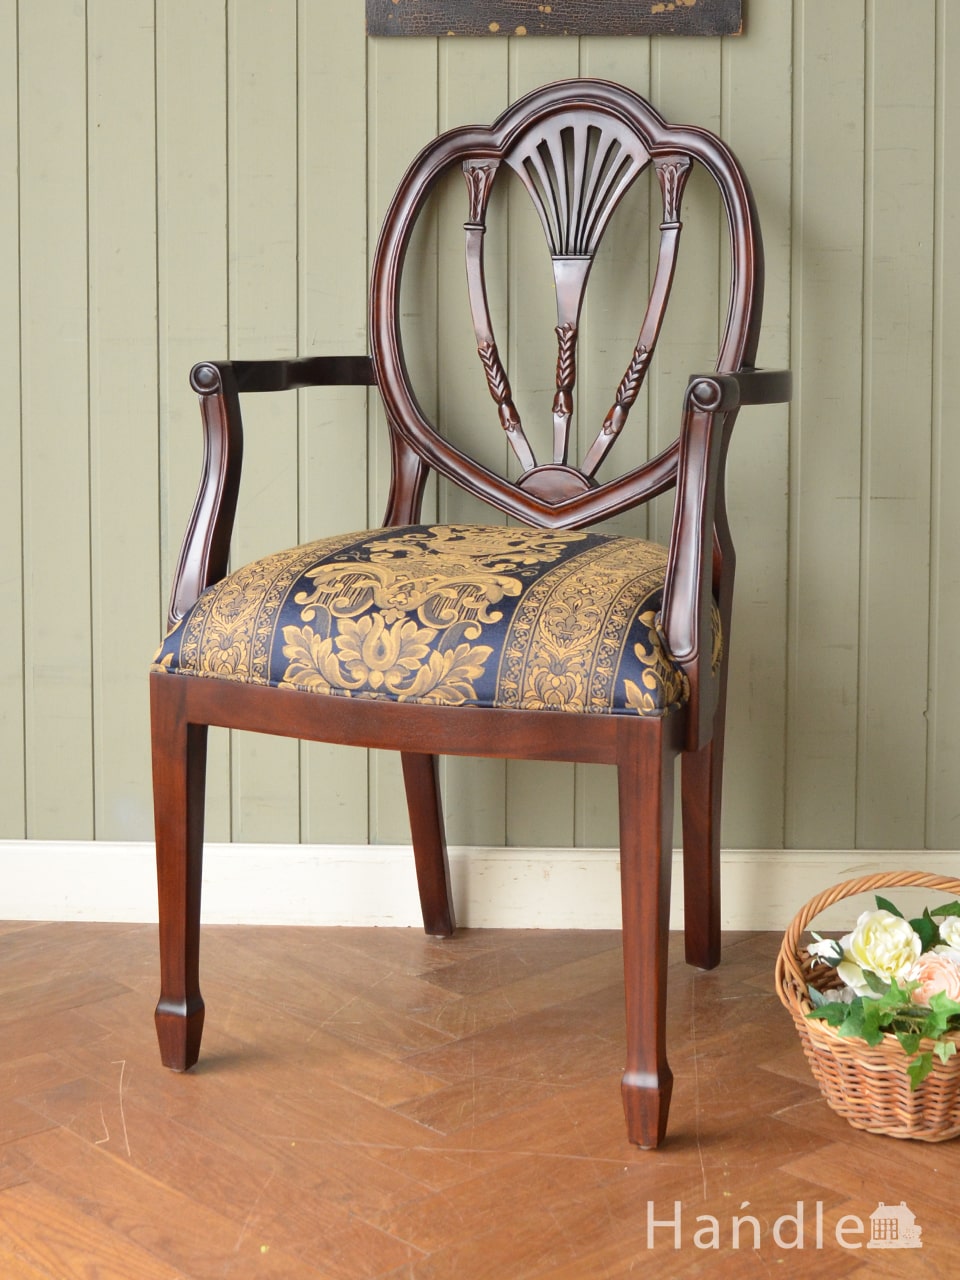 アンティーク風のおしゃれな椅子、背もたれの装飾が美しいアーム付きのヘップルホワイトチェア (y-232-c)